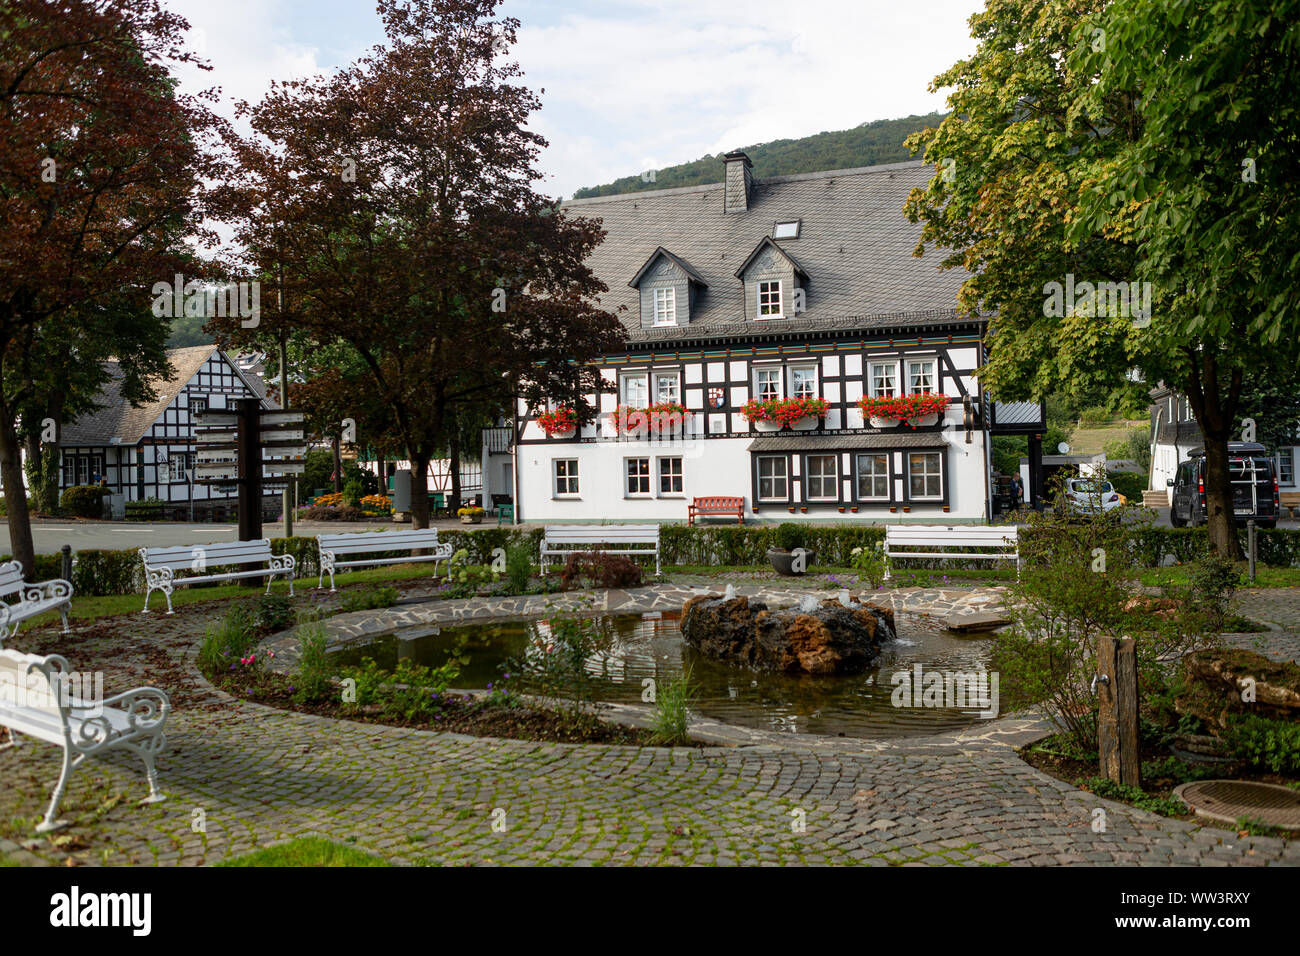 La piazza centrale del villaggio termale Grafschaft con la tipica architettura di mezzo in legno Vakwerk case nella regione di Sauerland in Germania Foto Stock